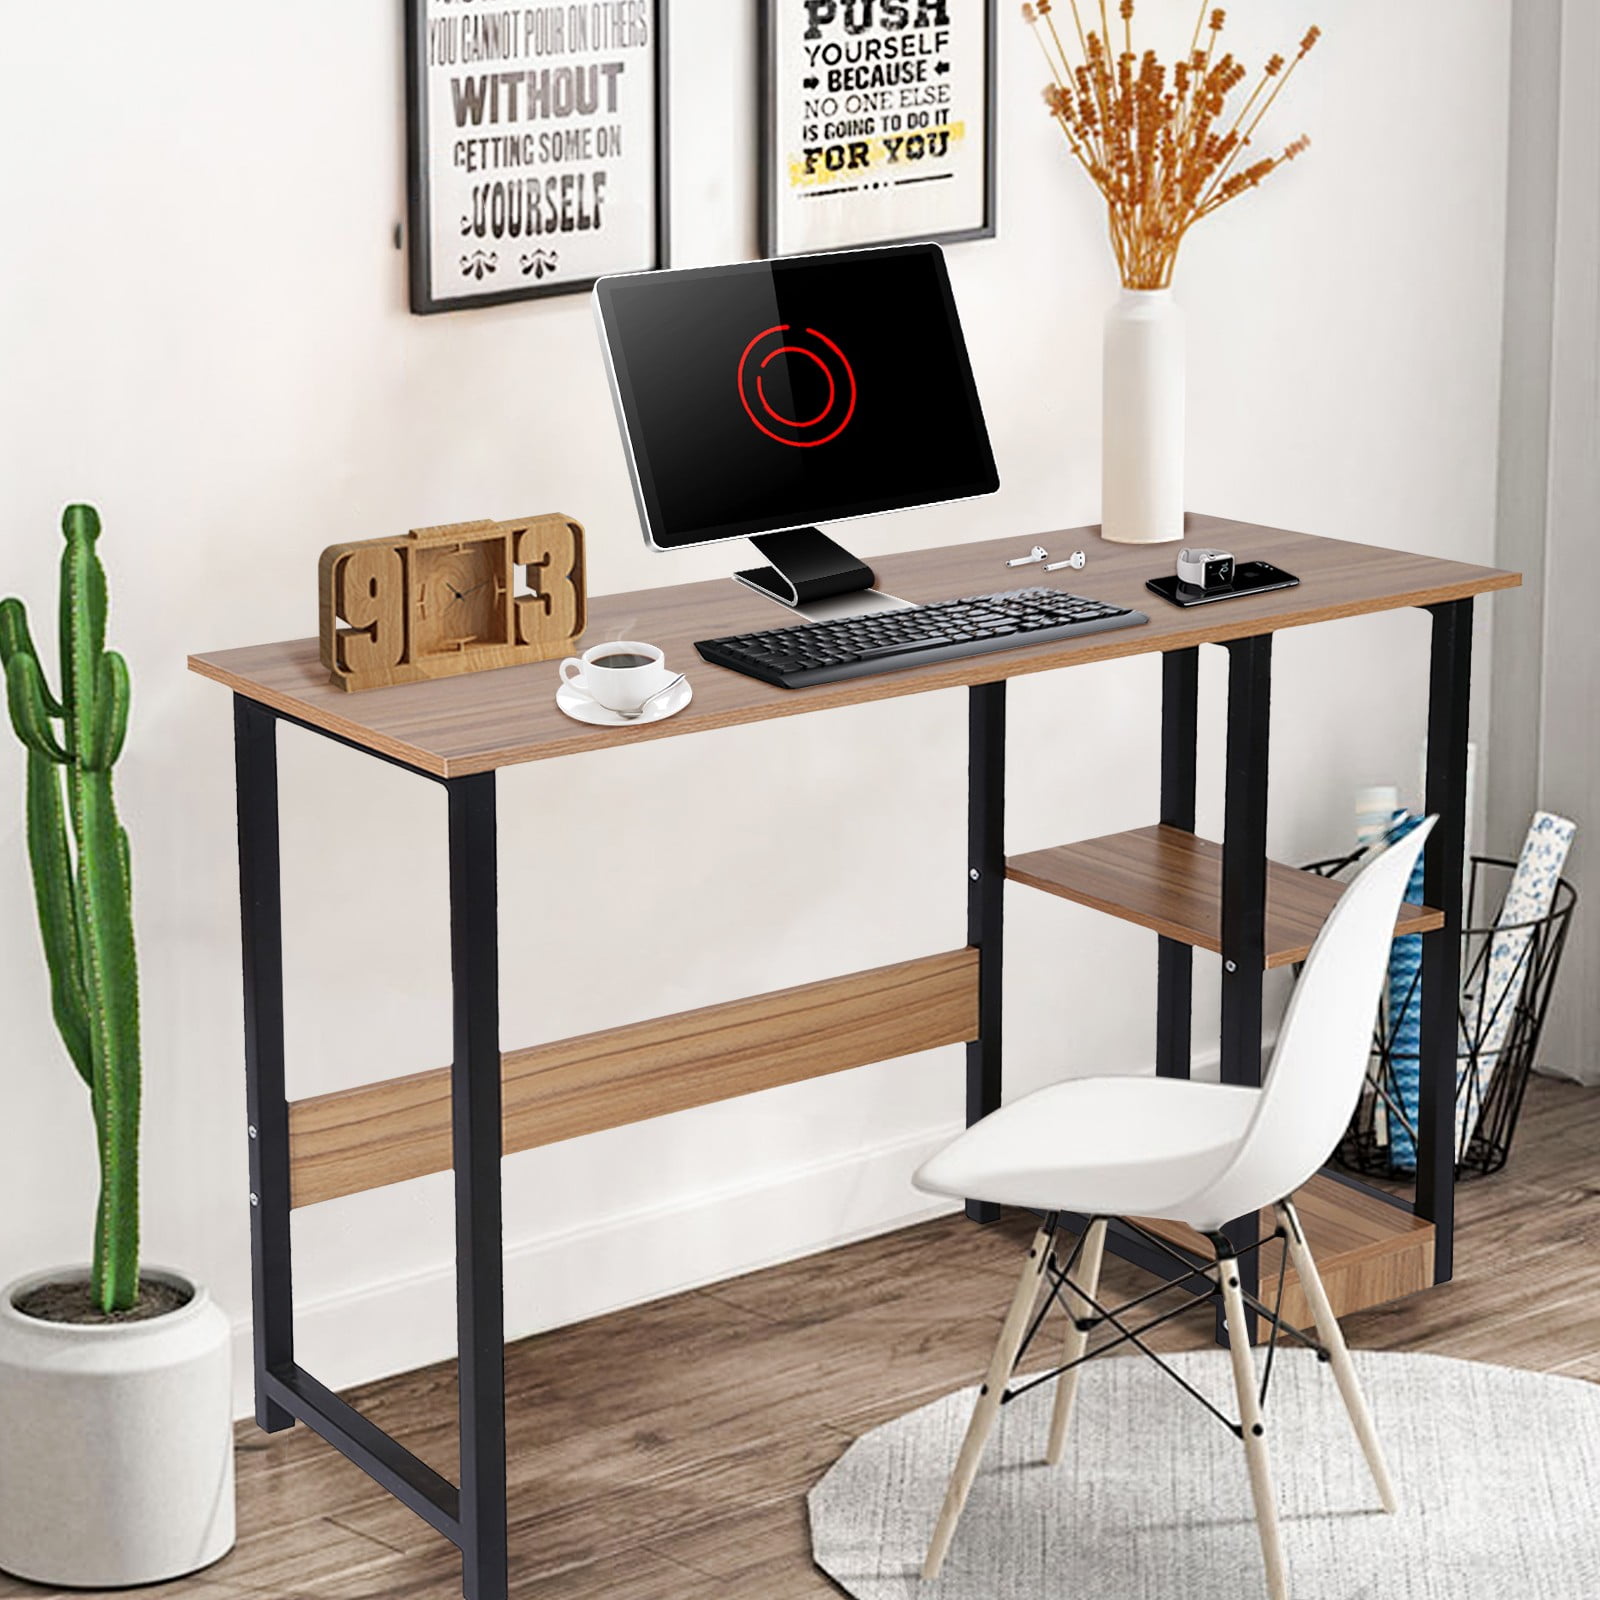 Details about   Home Desktop Computer Desk Bedroom Laptop Study Table Office Desk Workstation. 